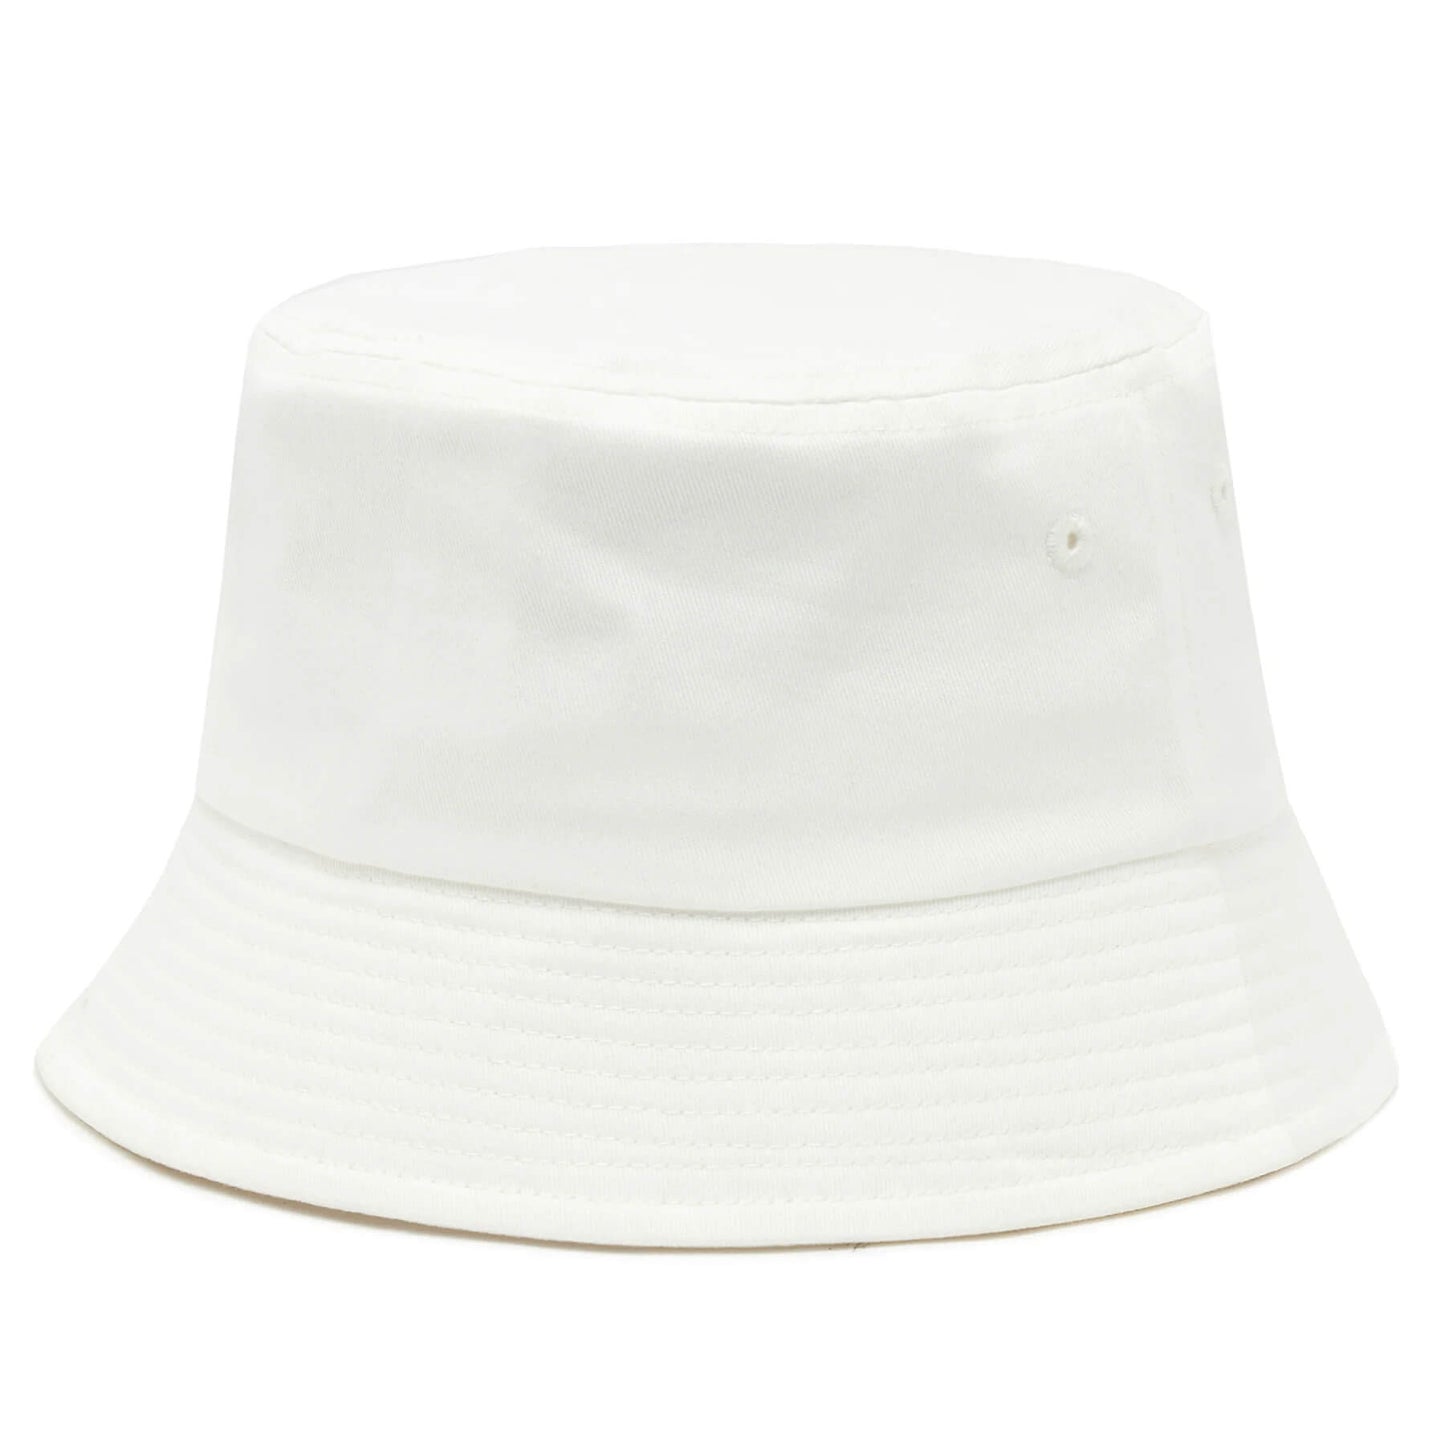 Fila BIZERTE Fitted Bucket hat Antique White